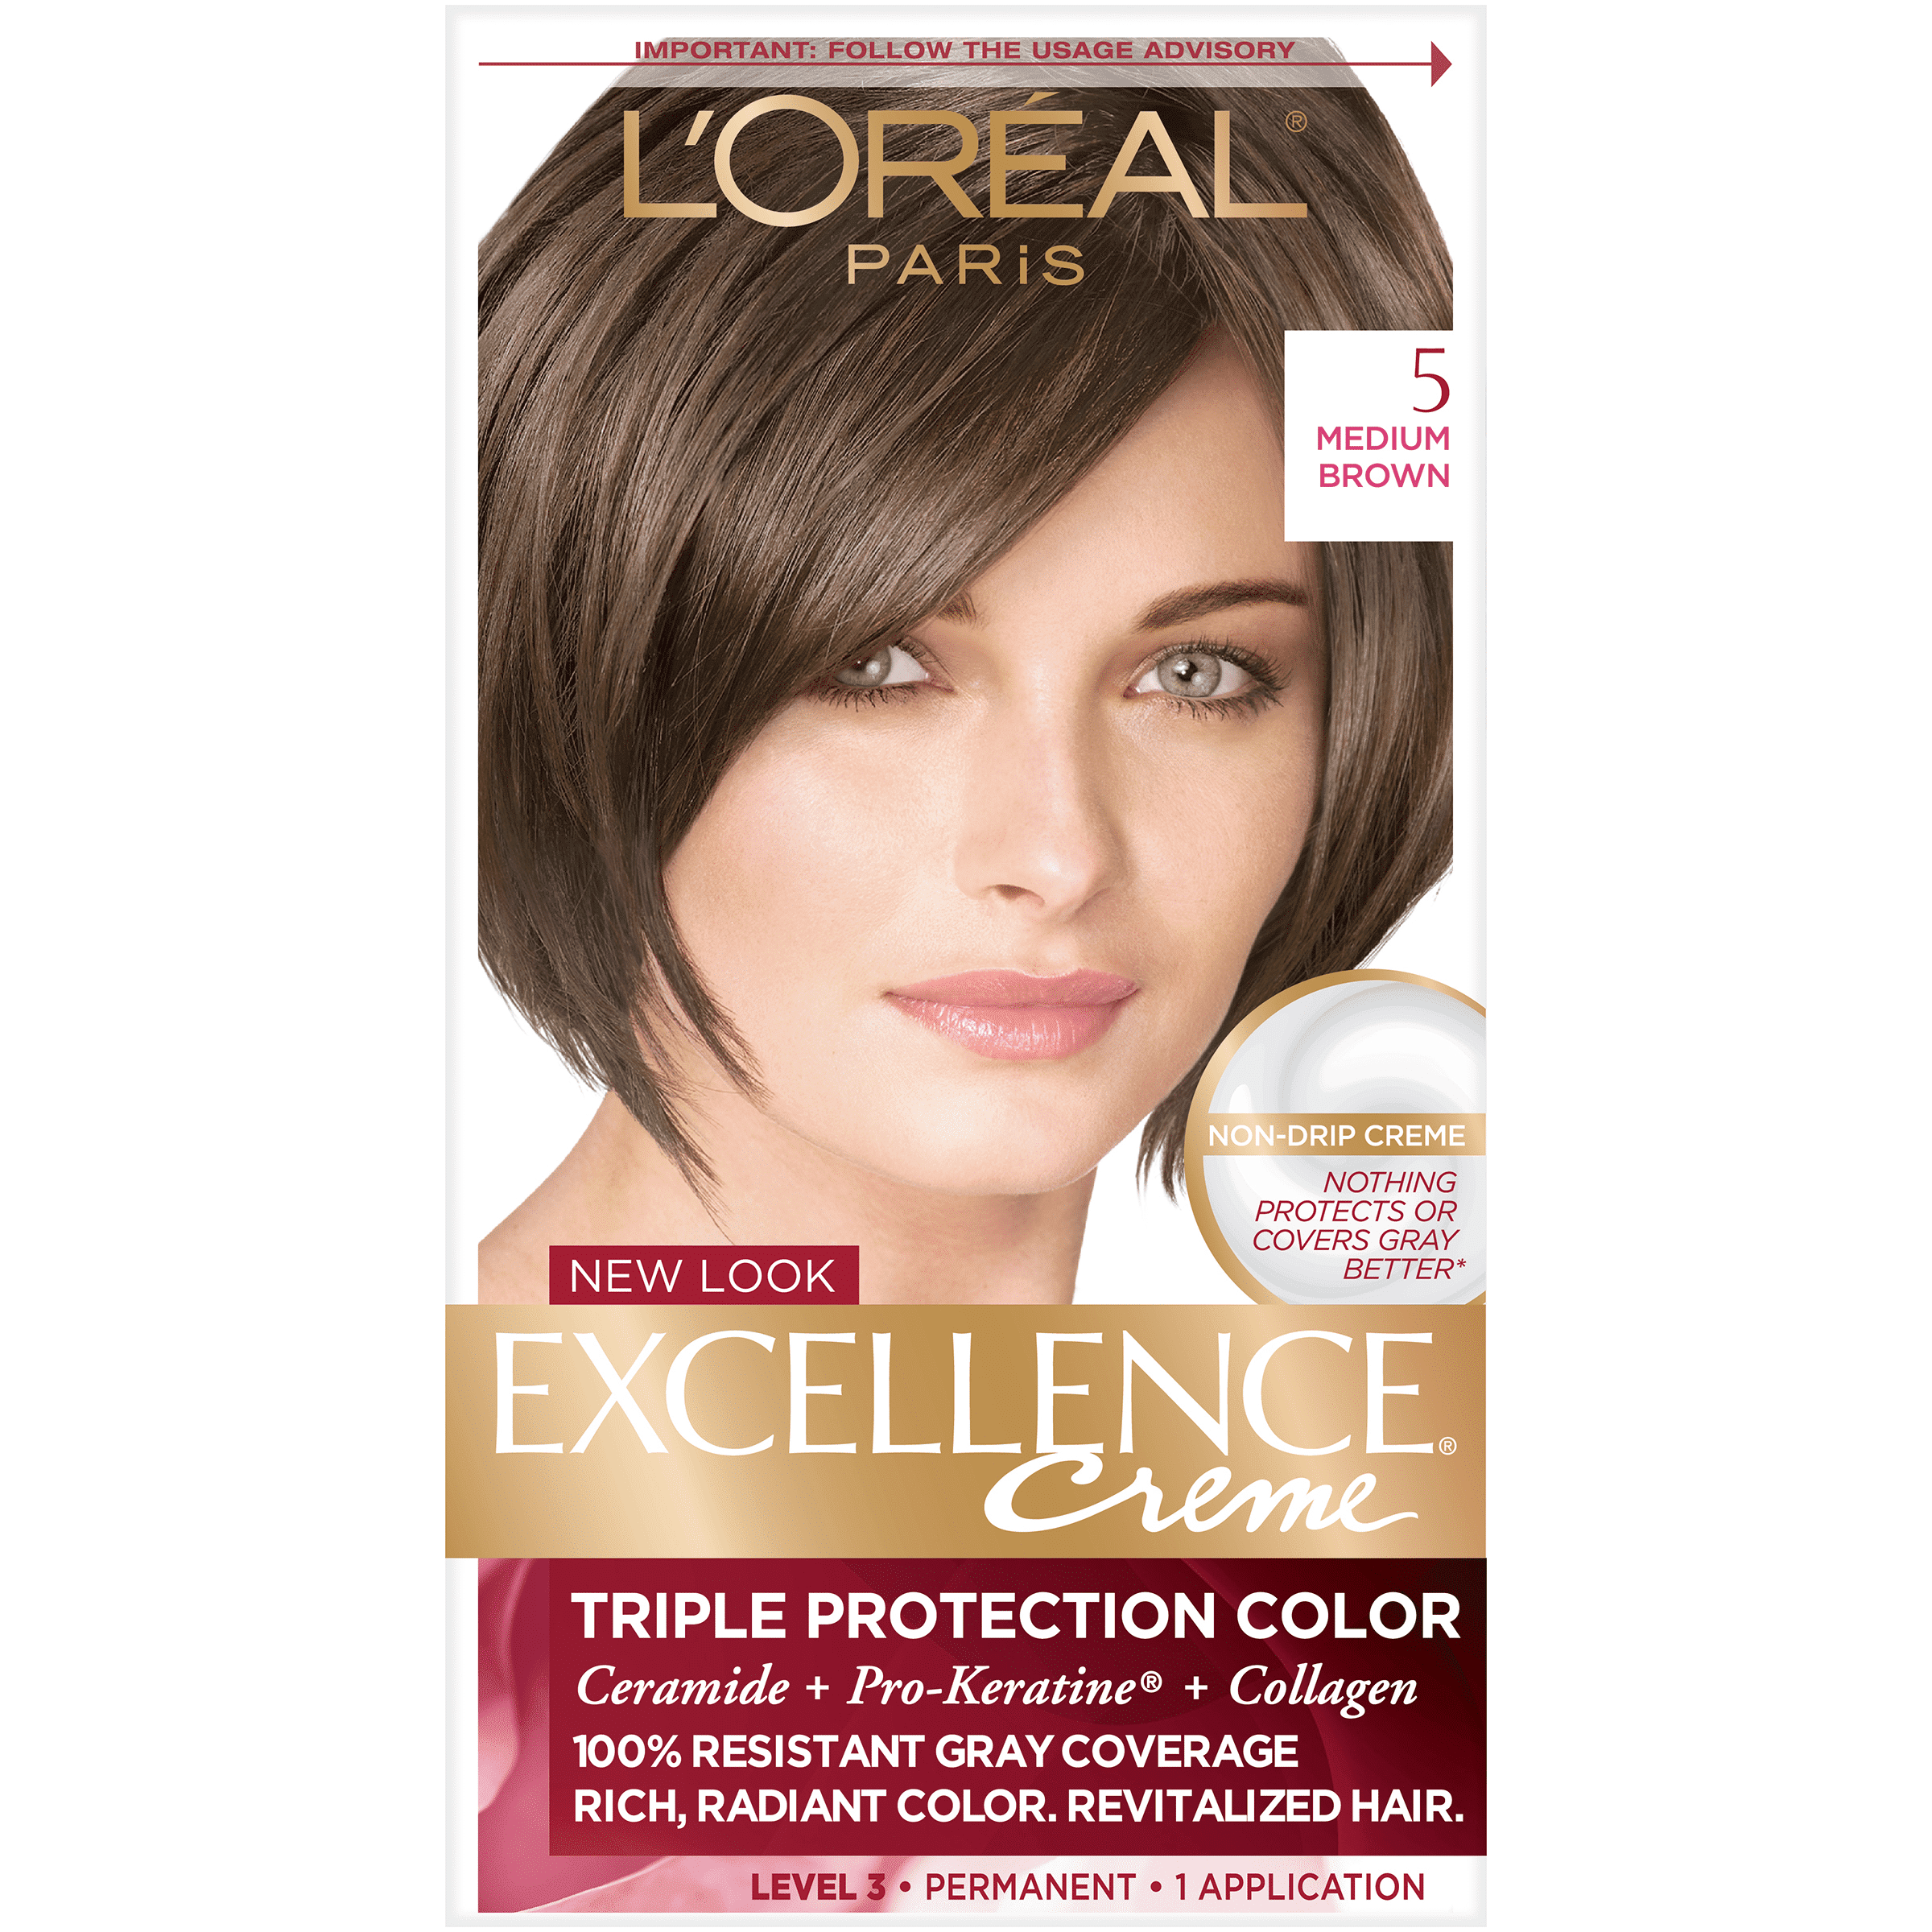 L'Oreal Paris Excellence Creme Permanent Triple Care Hair Color, 5 Medium Brown, 1 kit